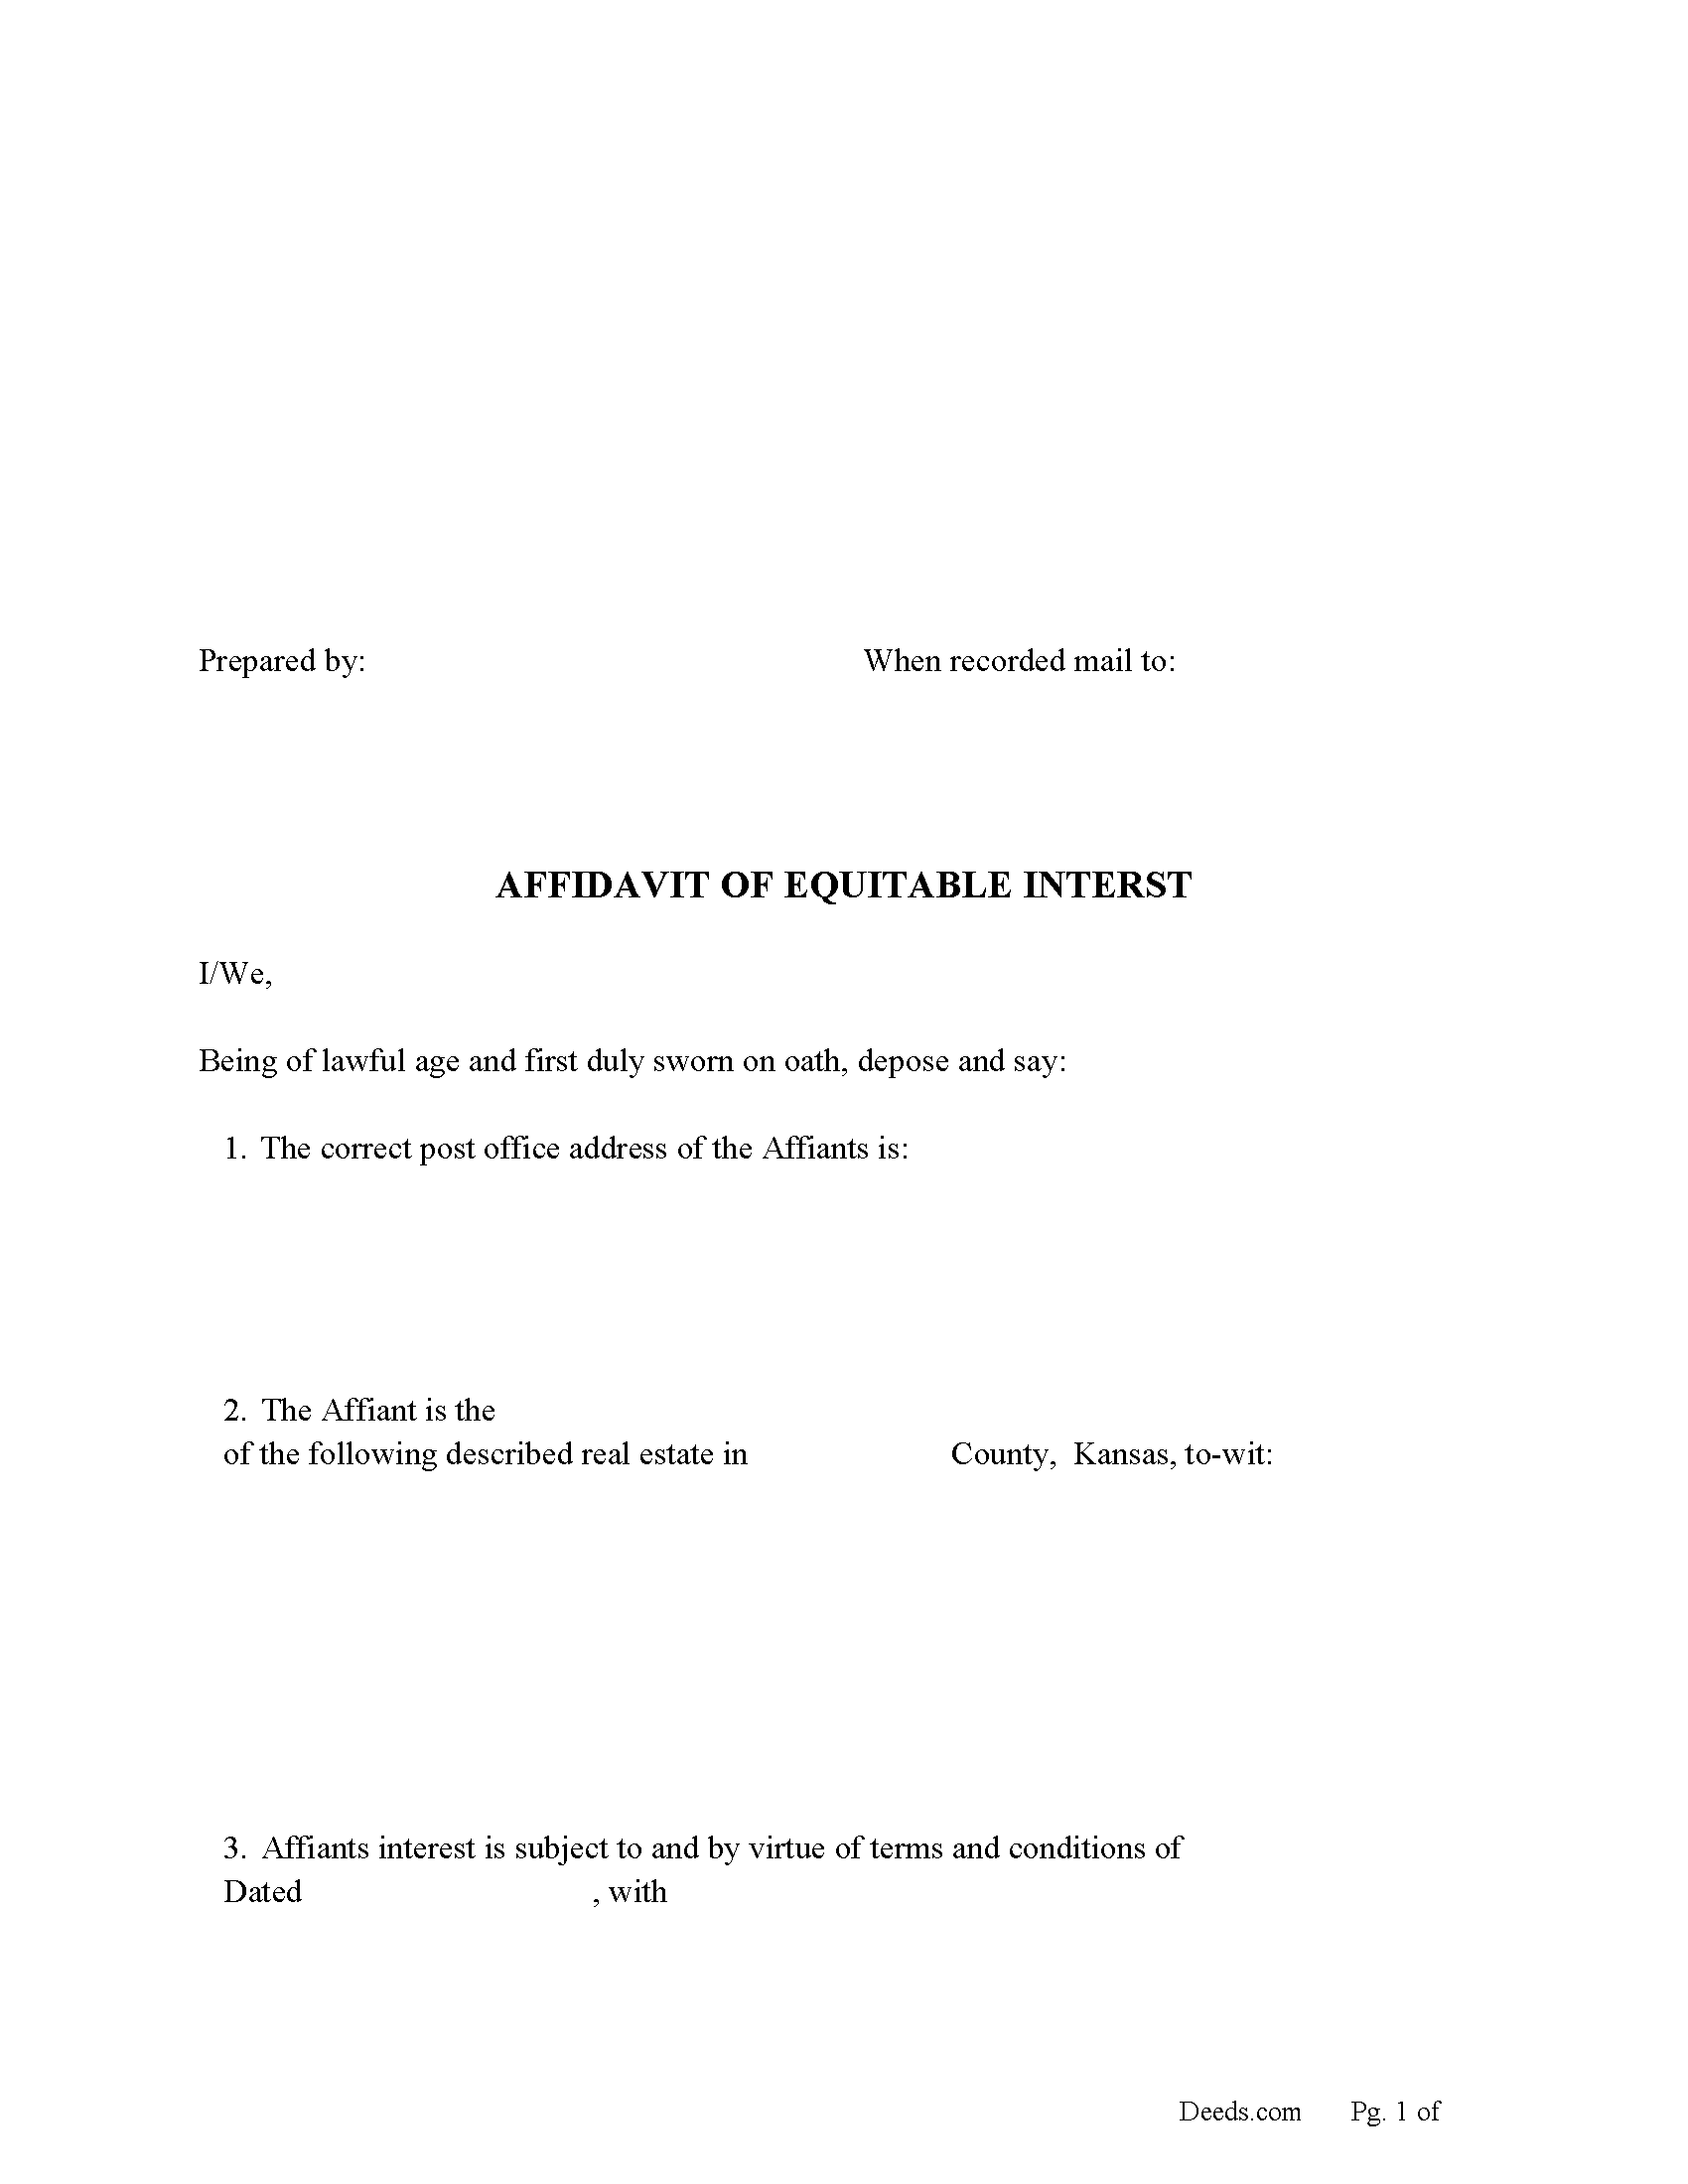 Affidavit for Equitable Interest